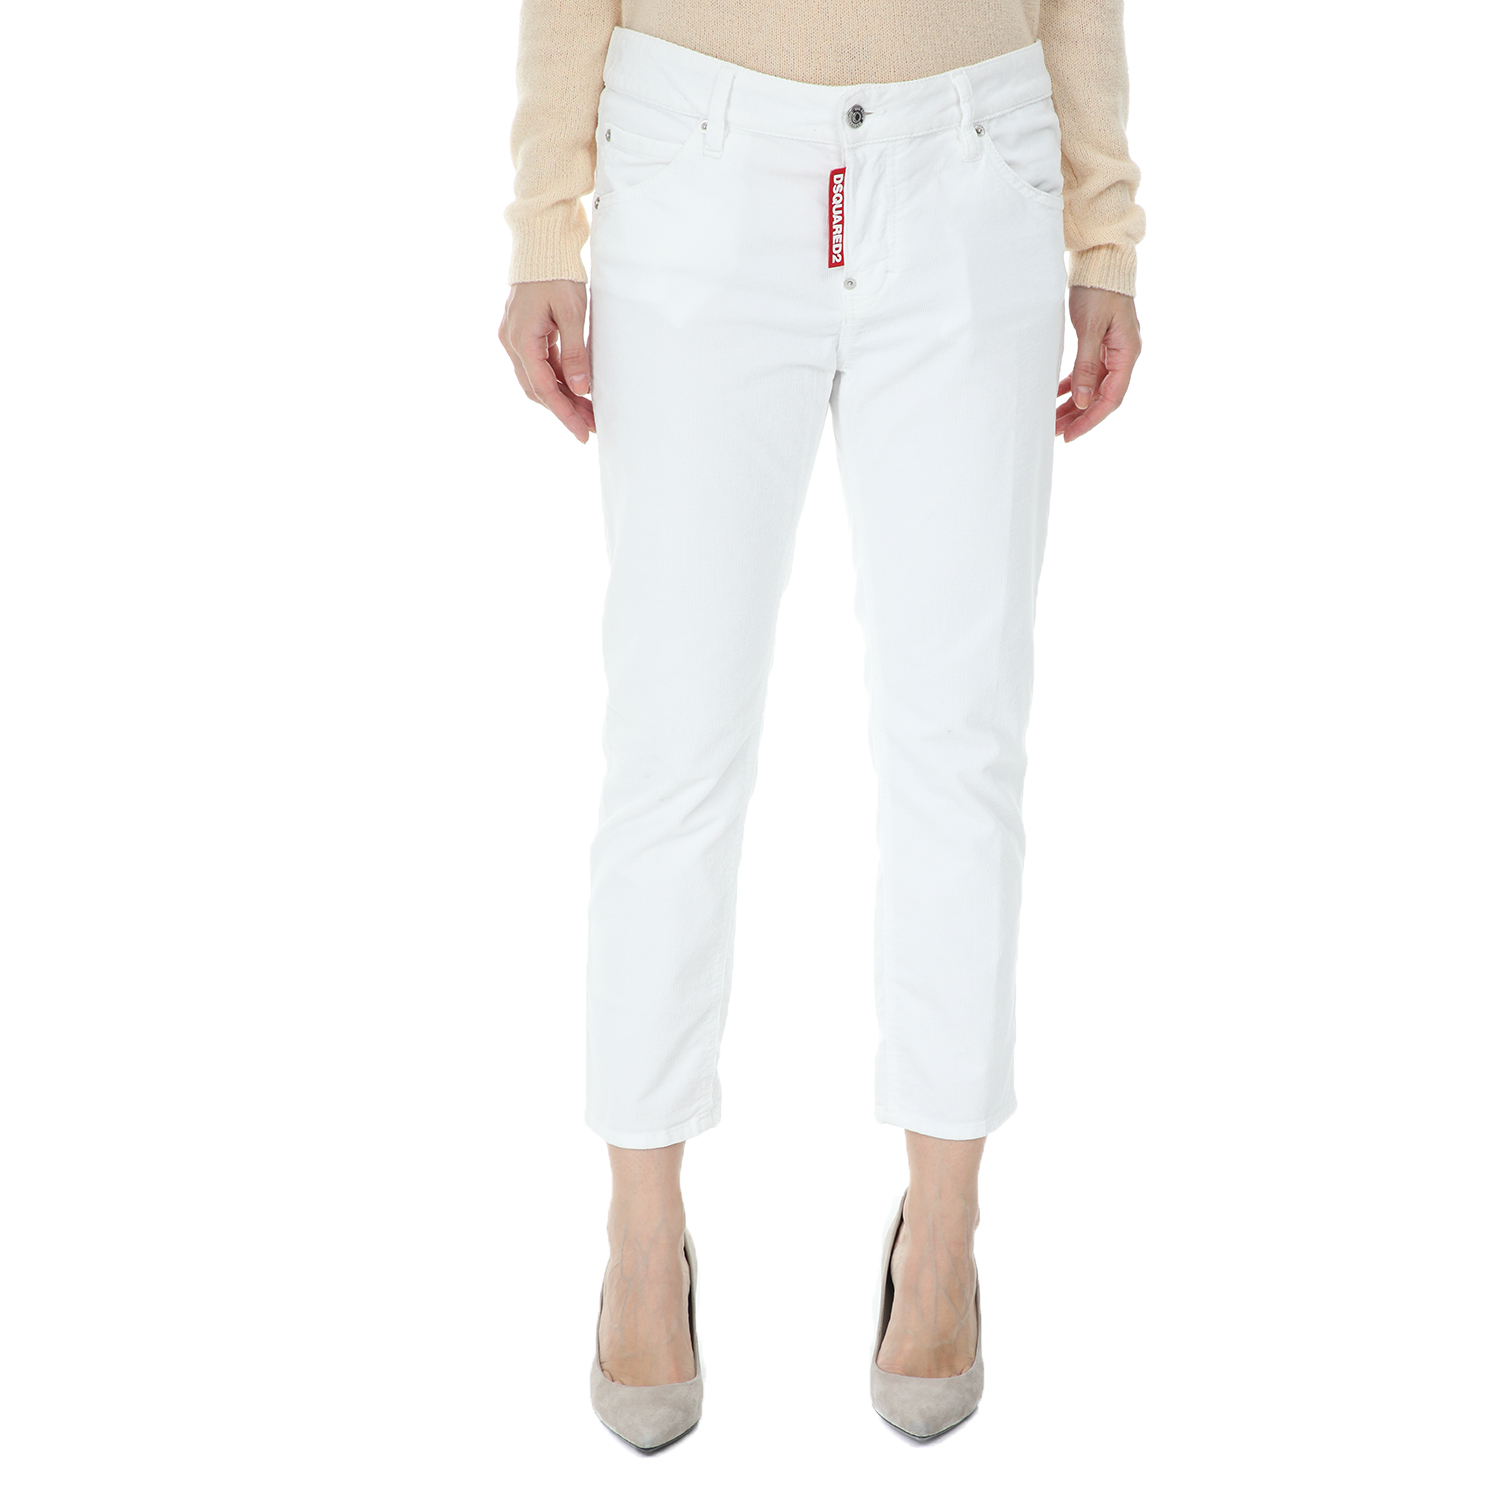 Γυναικεία/Ρούχα/Τζίν/Skinny Dsquared2 - Γυναικείο jean παντελόνι Dsquared2 λευκό